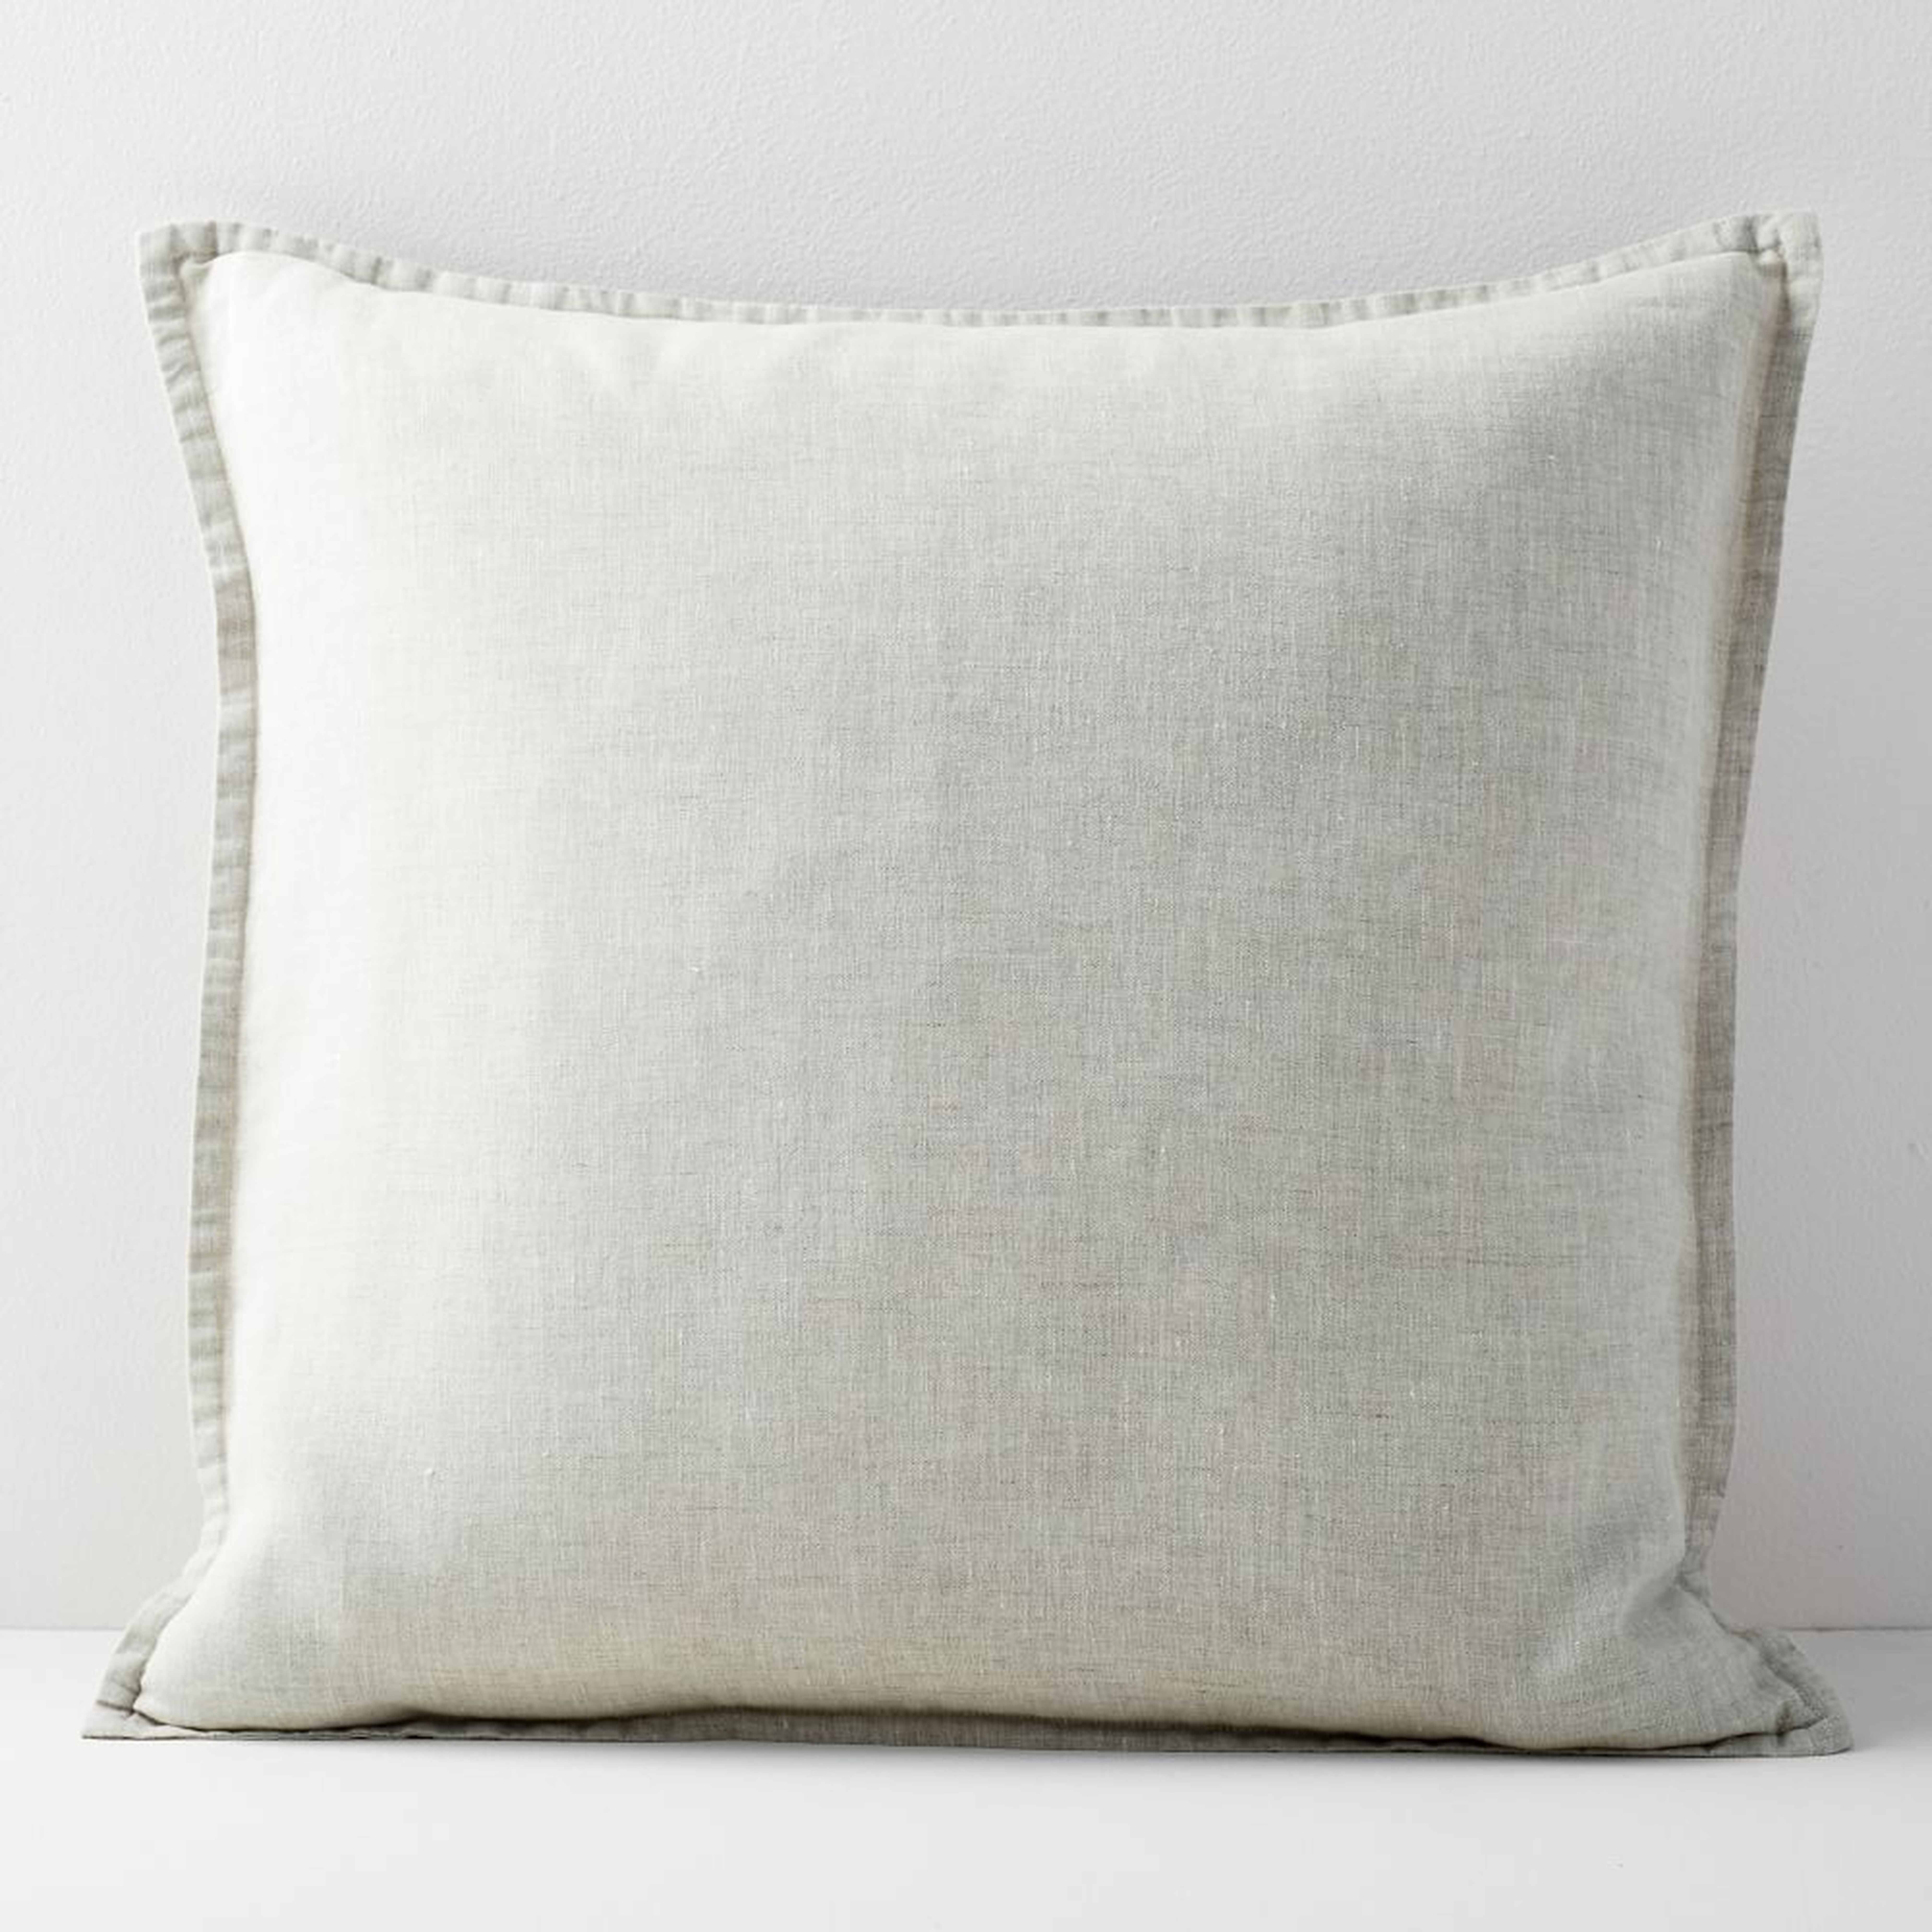 European Flax Linen Pillow Cover, 24"x24", Natural - West Elm